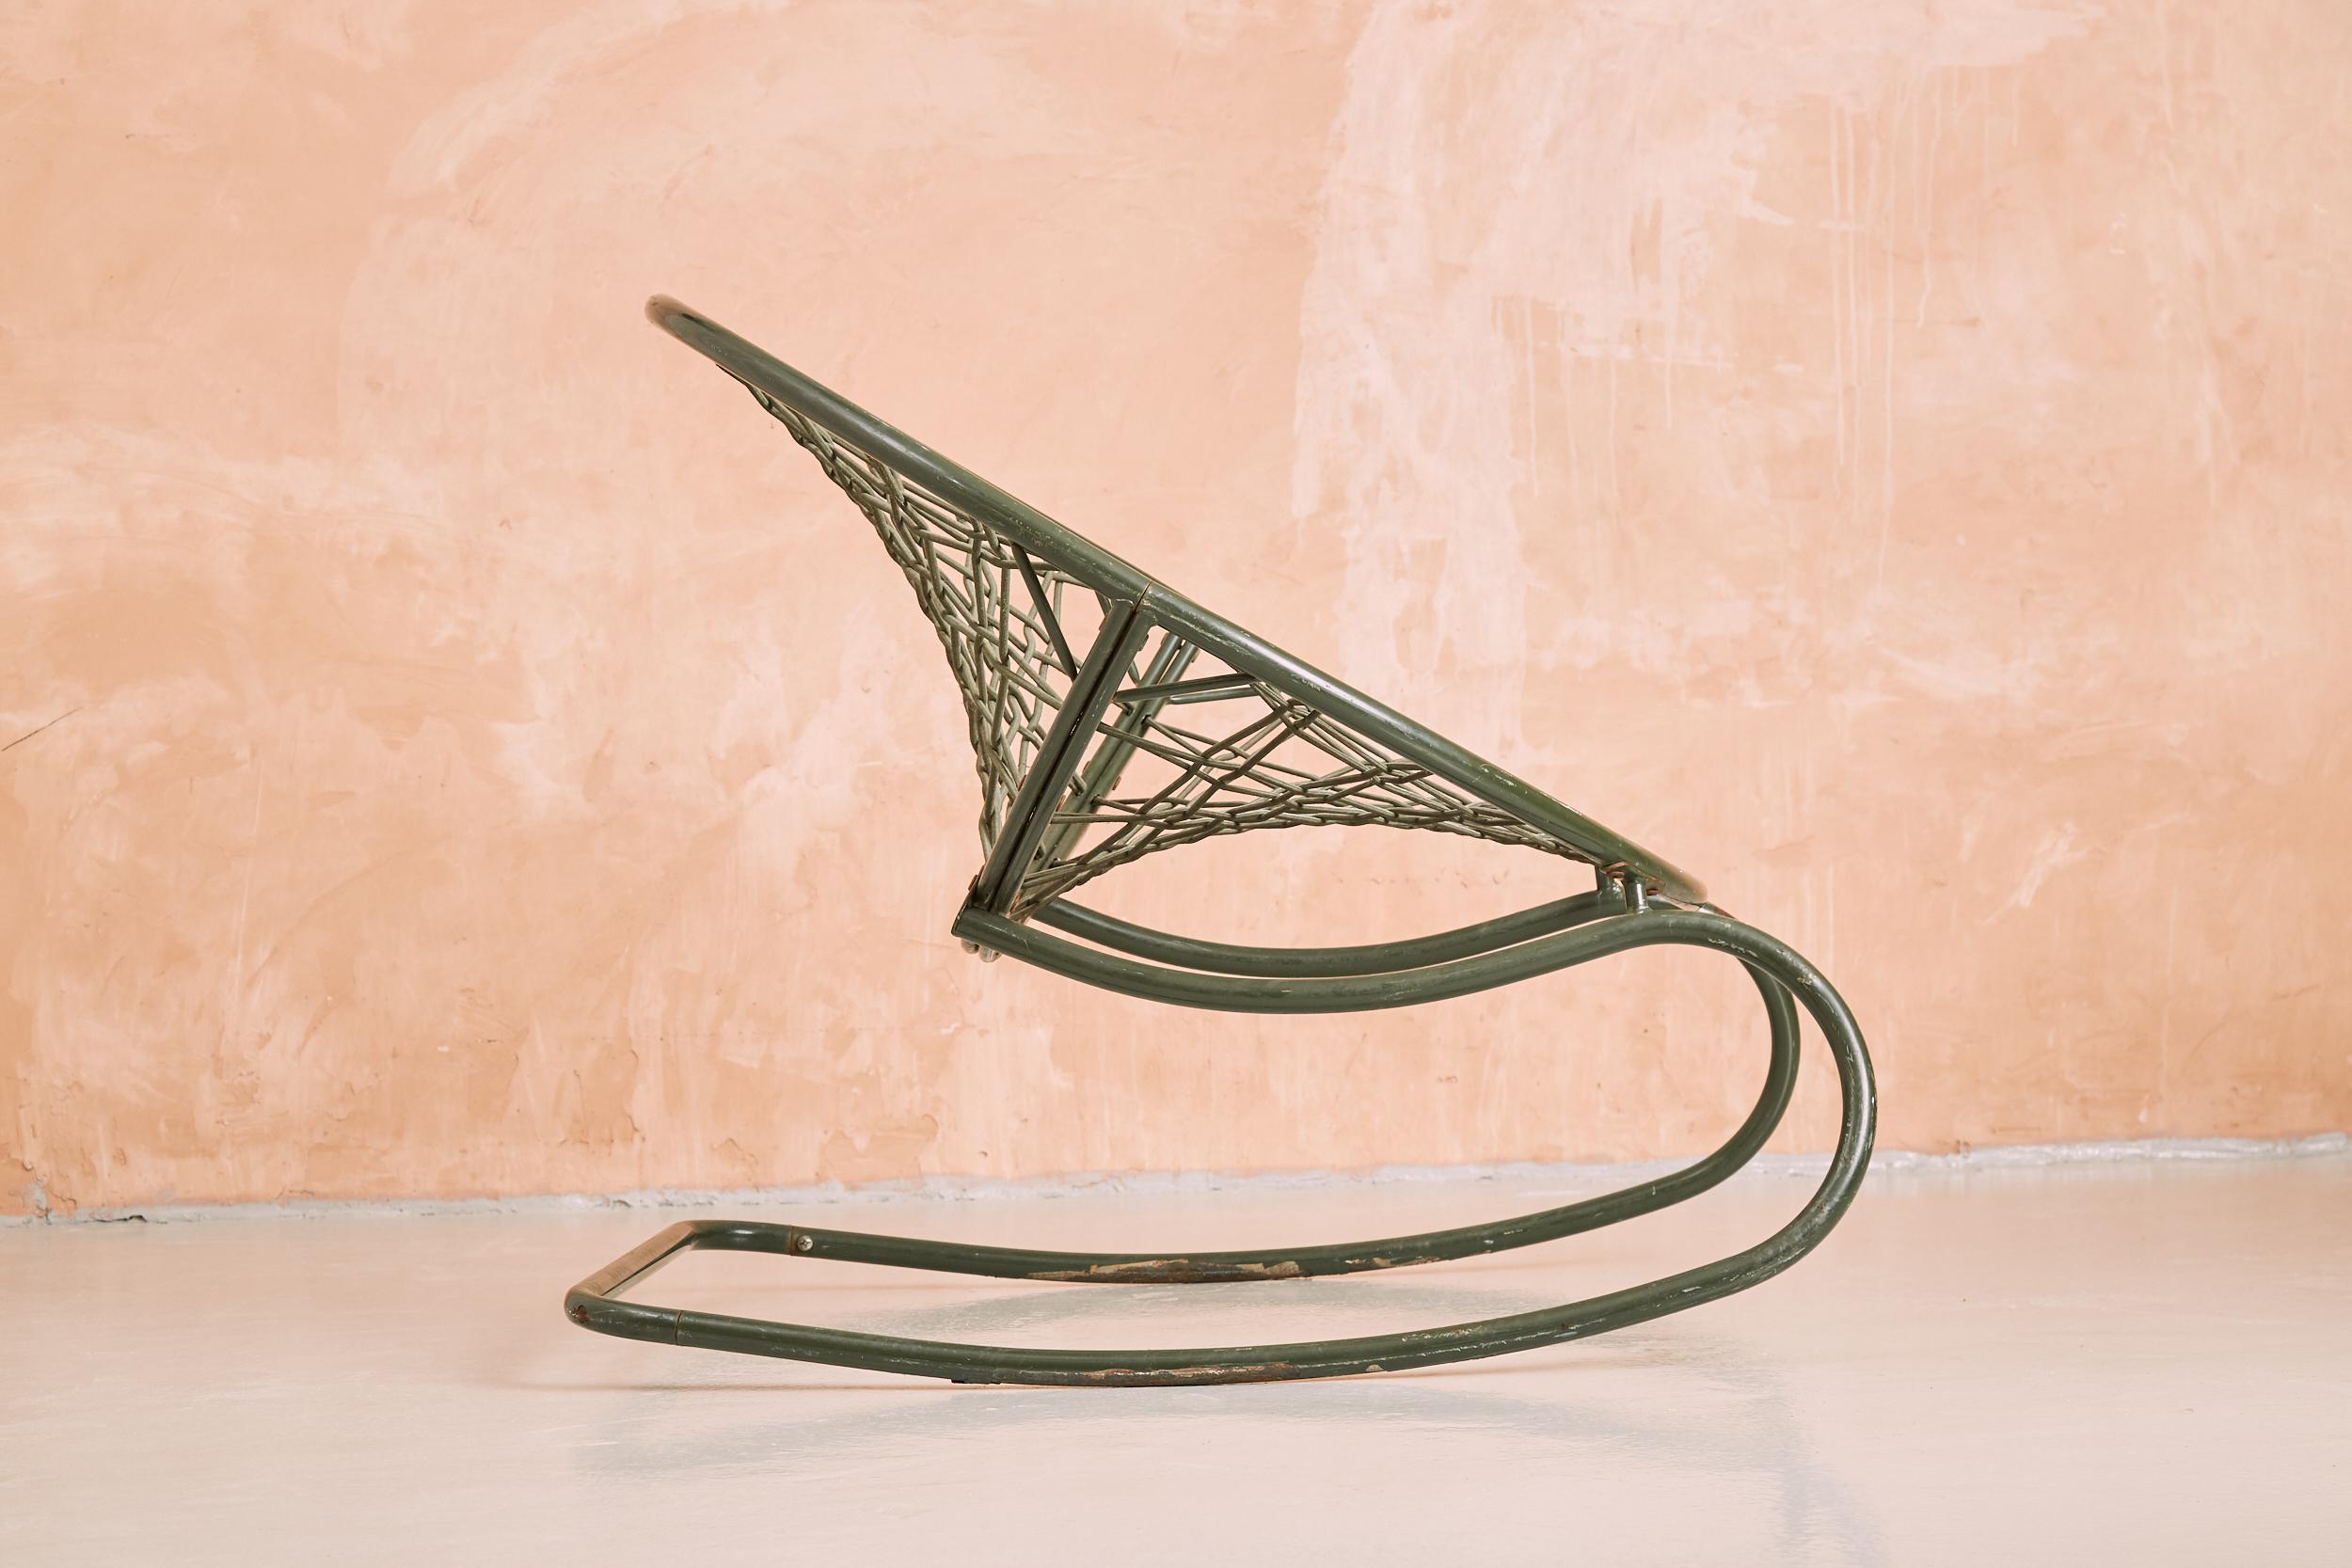 Un rocking-chair assez extraordinaire conçu par Niels Gammelgaard en 2002 pour Ikea. La chaise est construite en acier tubulaire, avec un cadre en forme de disque surdimensionné, grillagé avec des cordes élastiques pour former un siège extrêmement